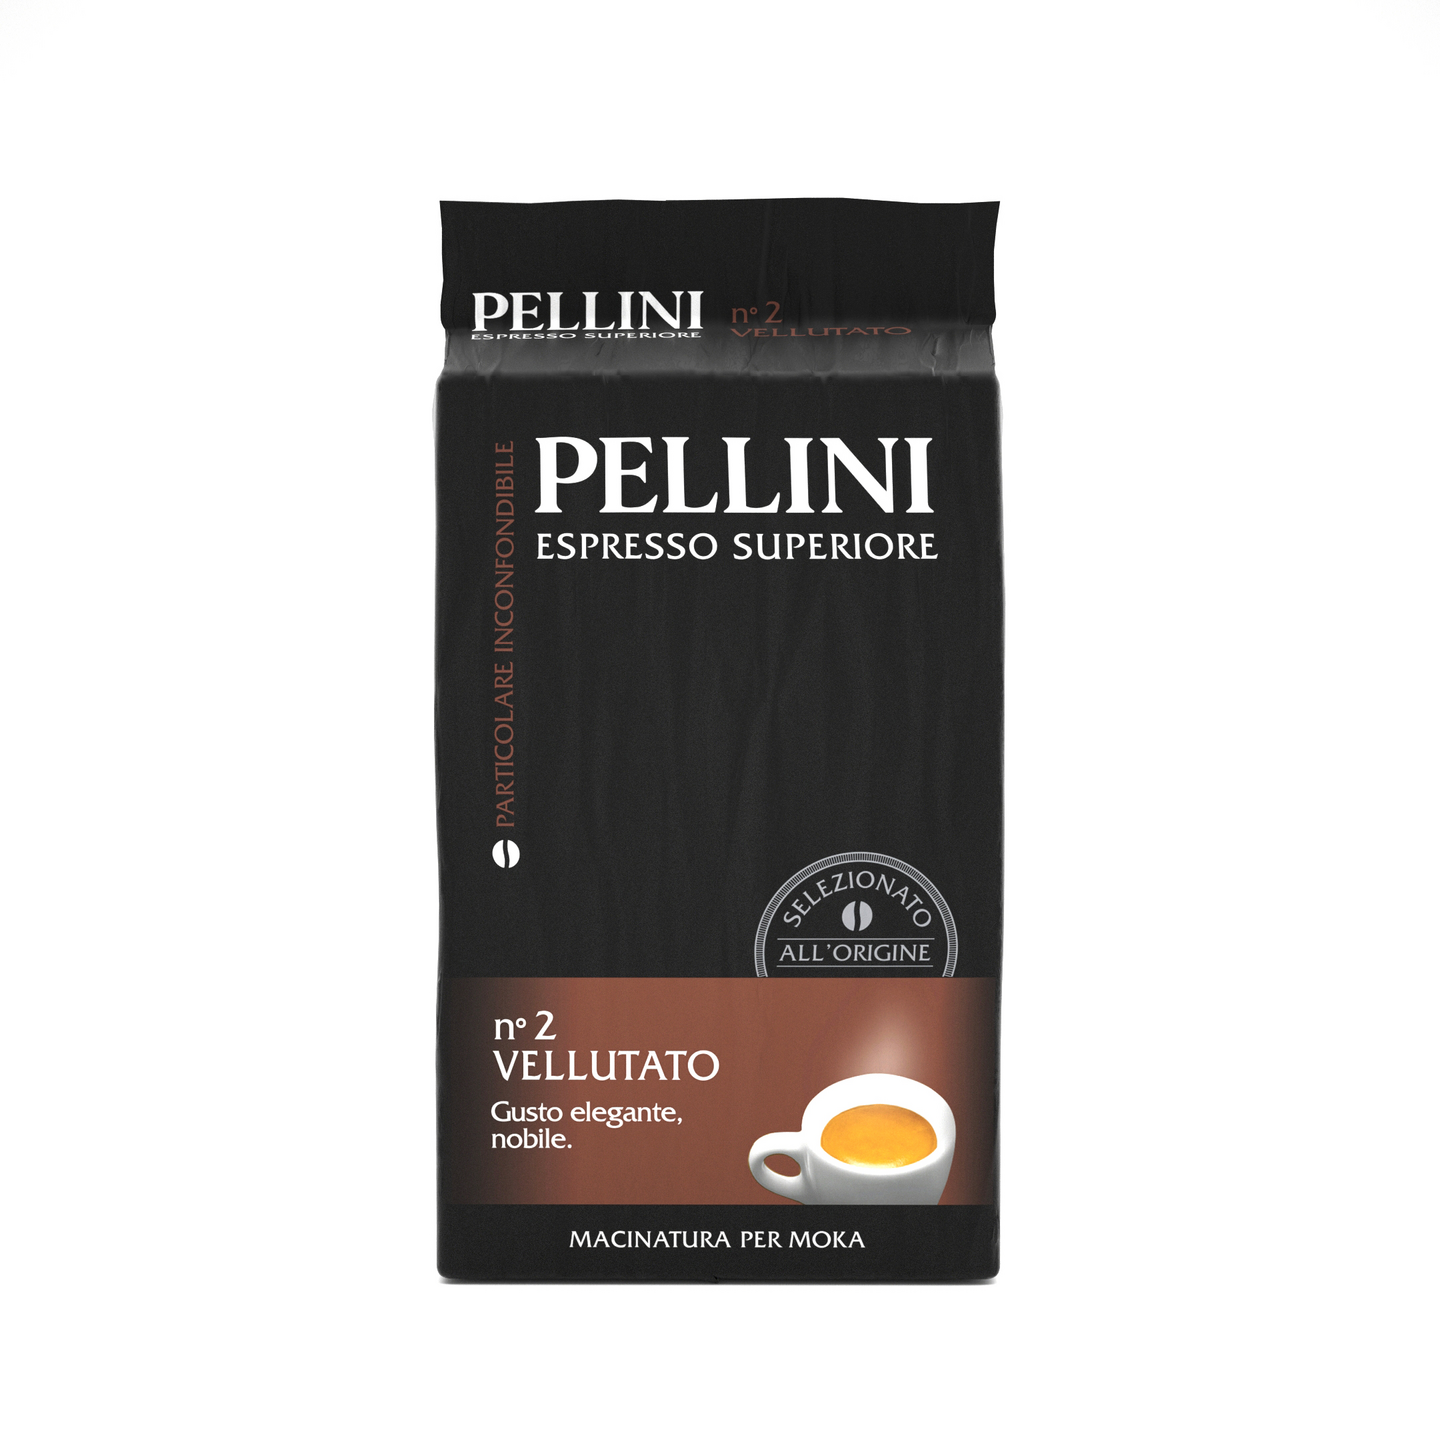 Pellini Vellutato 250g jauhettu espresso